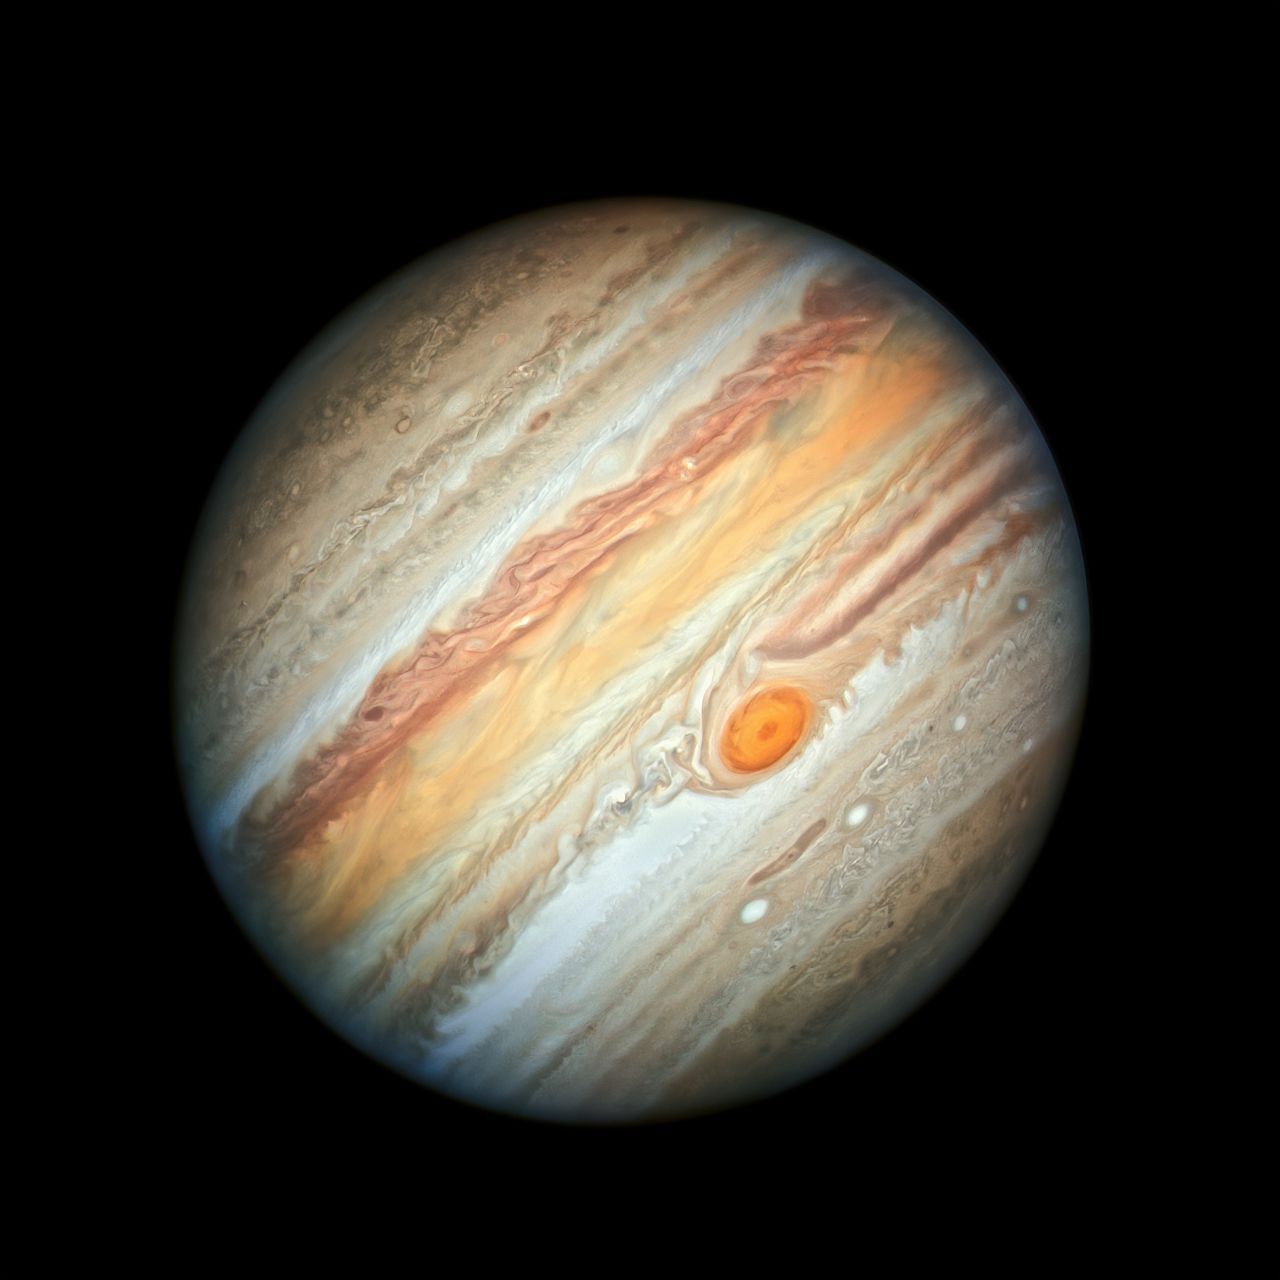 Als am 27. Juni der Jupiter nur 644 Millionen Kilometer entfernt war, nutzte das Hubble seine Chance. Zu sehen ist die detailierteste Aufnahme, die wir bis jetzt von Jupiter haben. Der Planet ist vollkommen mit Wolken bedeckt. Der große Rote Punkt ist das Auge eines Sturms, der seit mindestens 360 Jahren auf dem Planeten wütet.